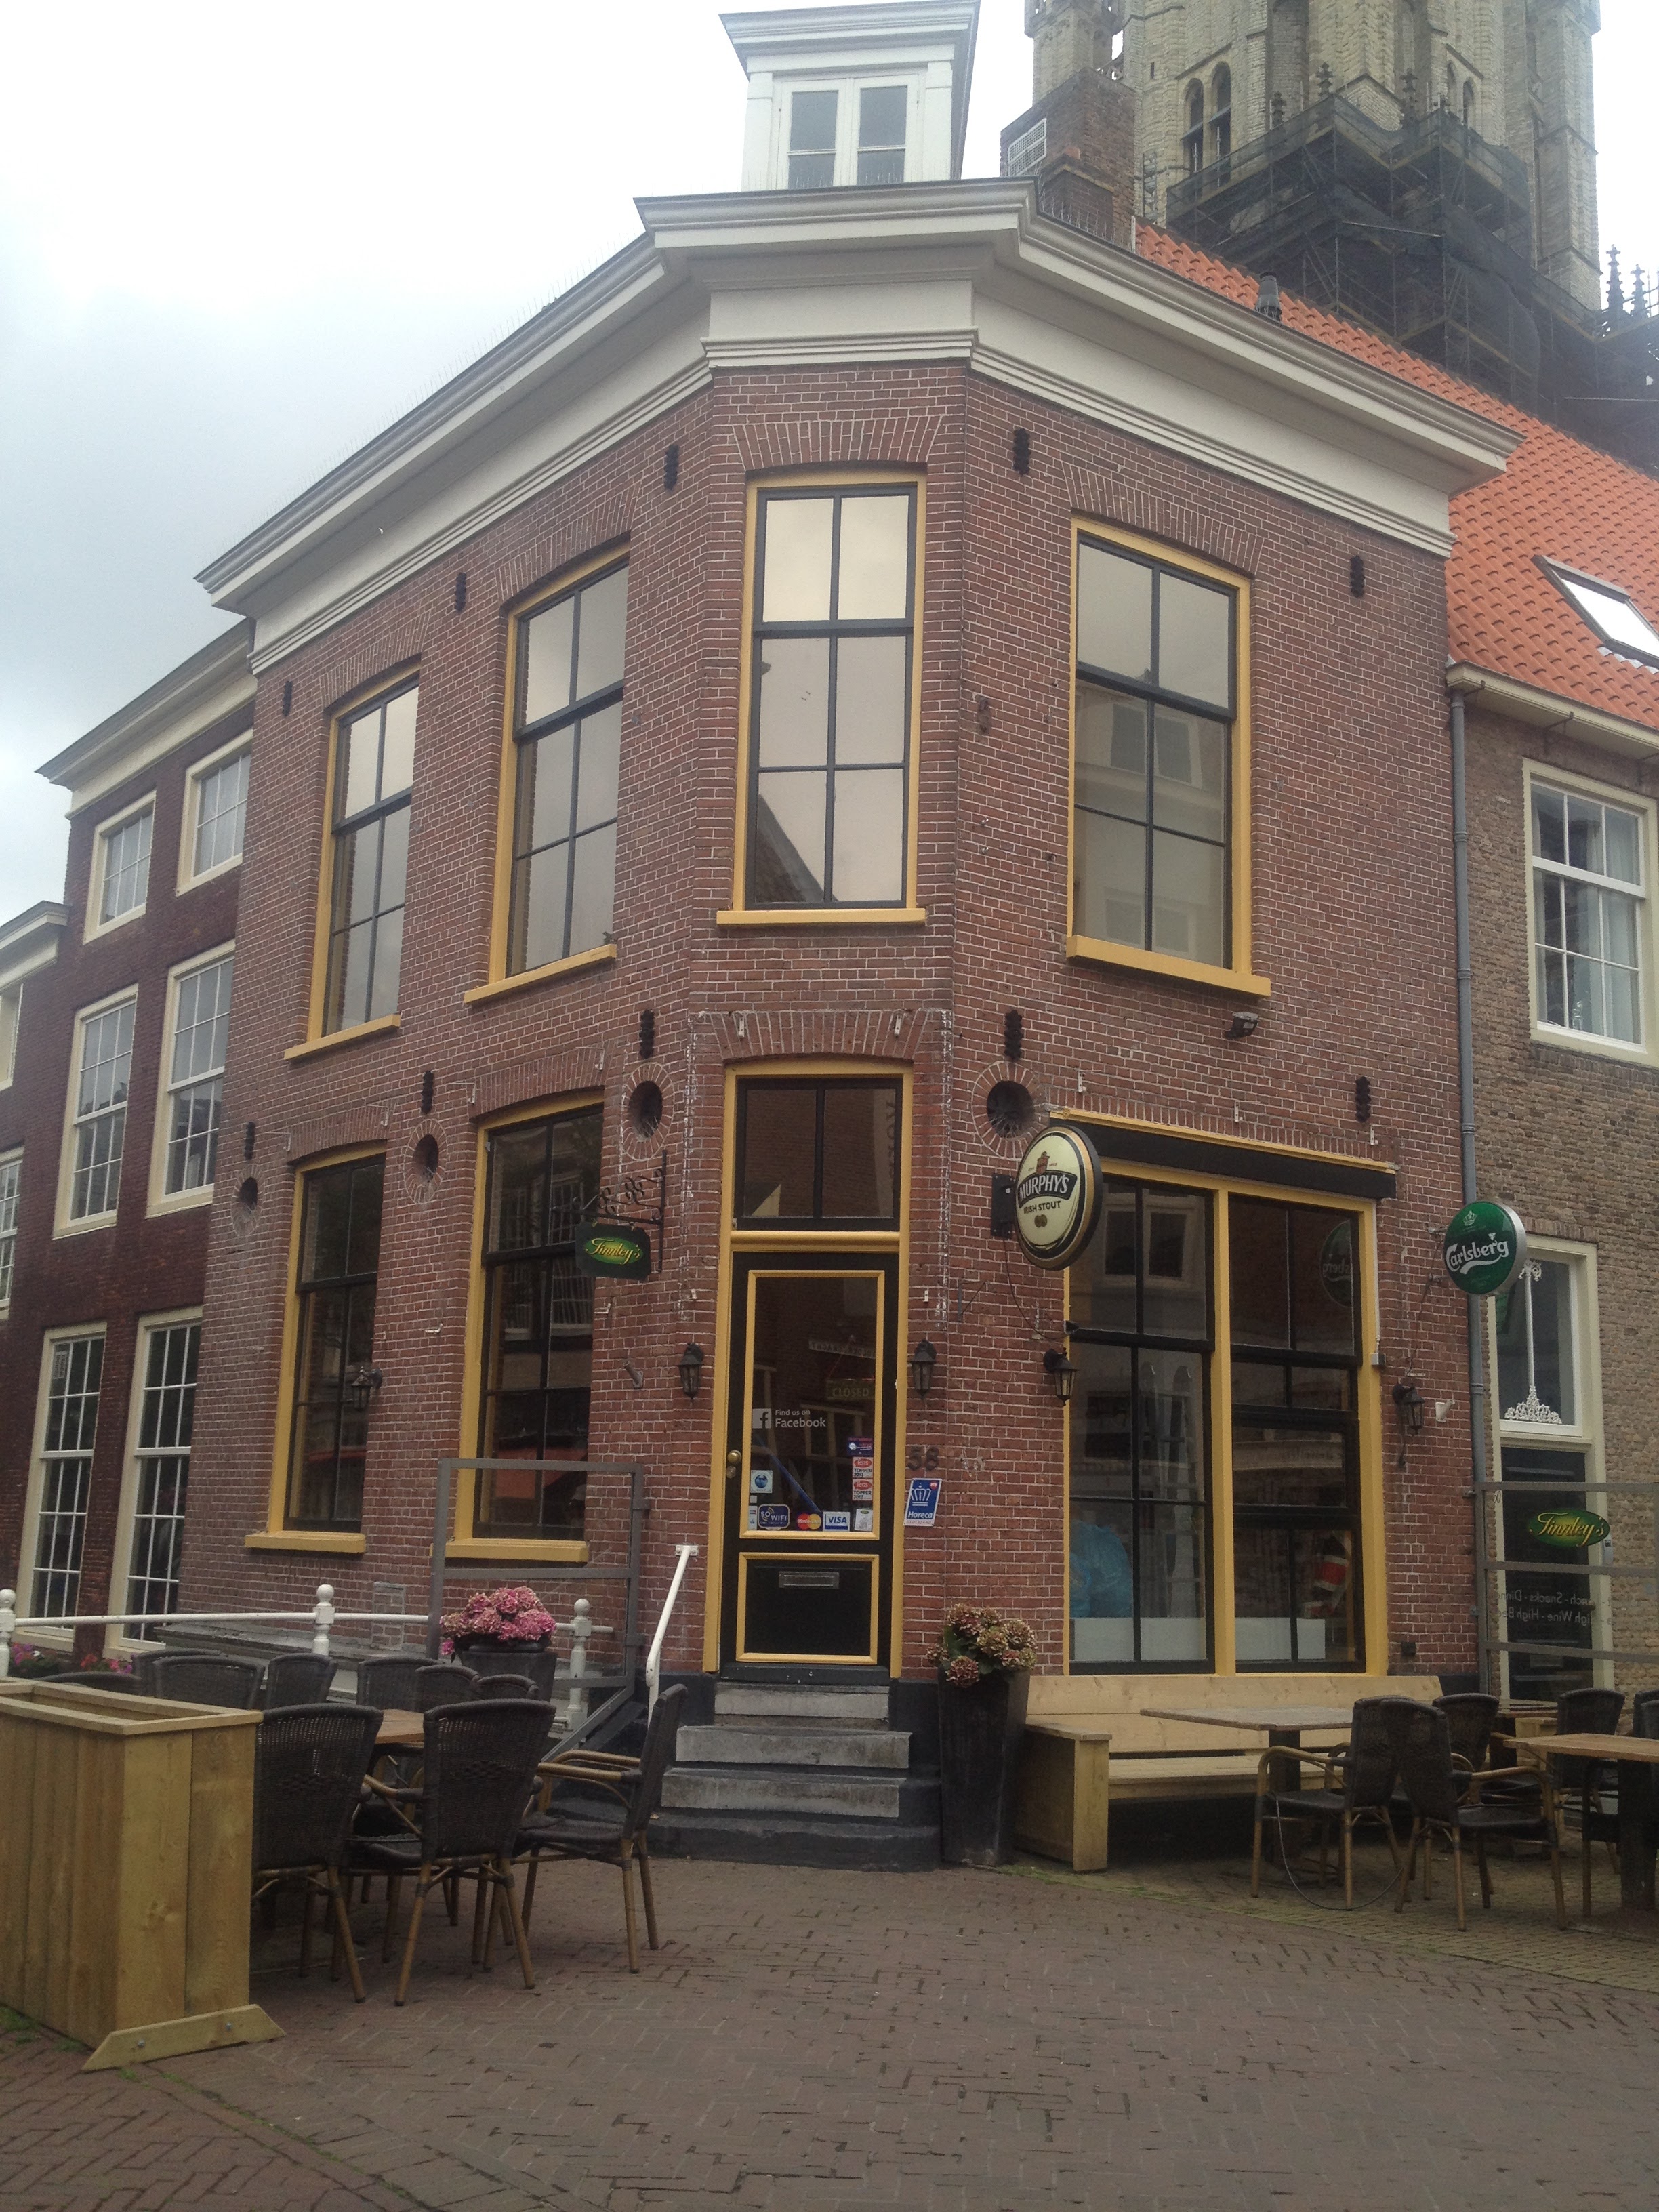 Delft - Clearview 40 gemonteerd op bovengedeelte van oude ramen op de eerste etage